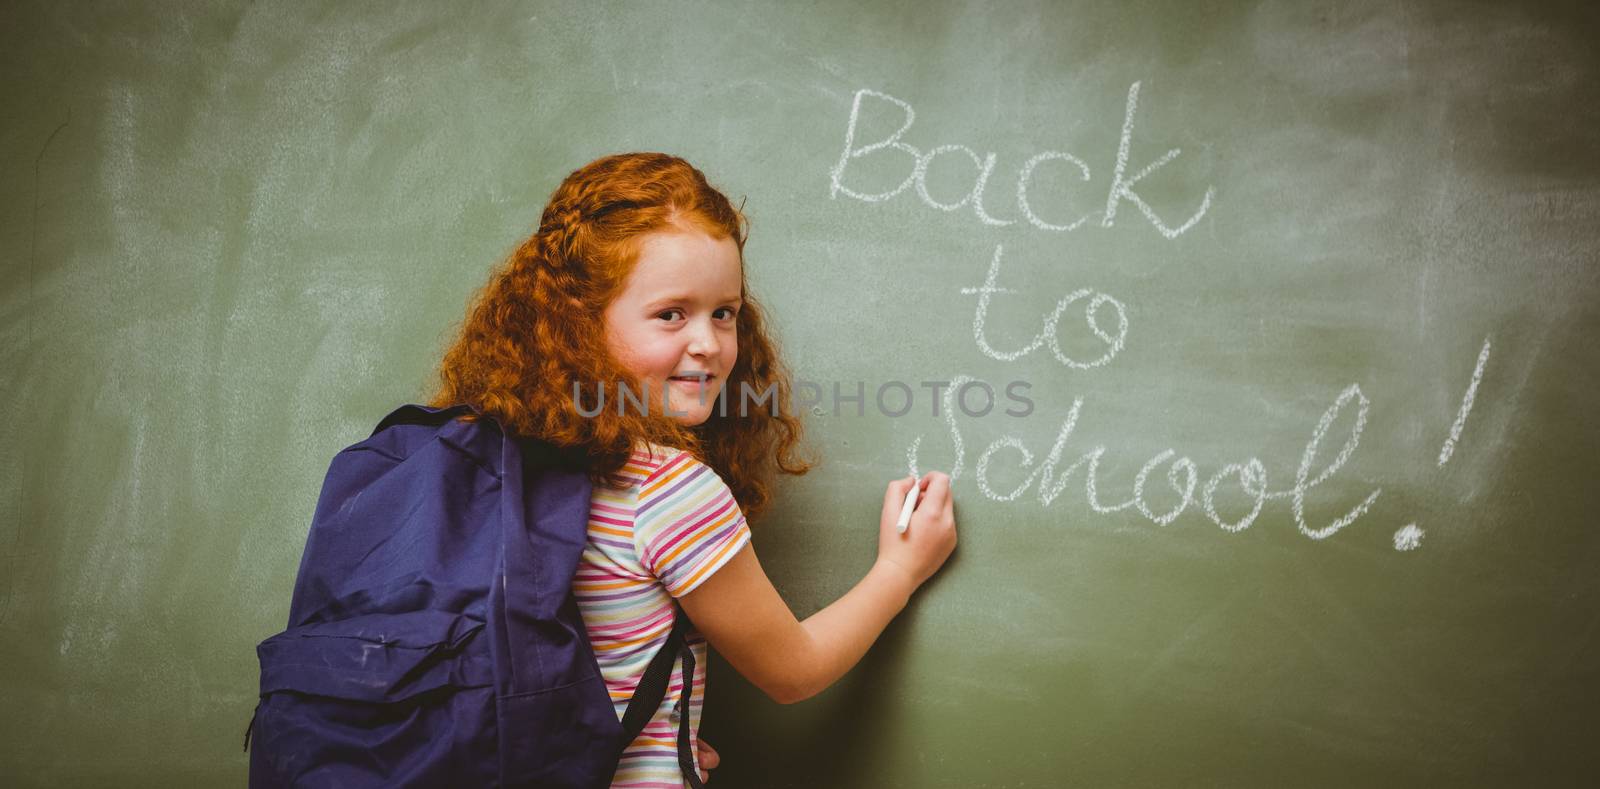 Portrait of cute little girl writing on blackboard by Wavebreakmedia